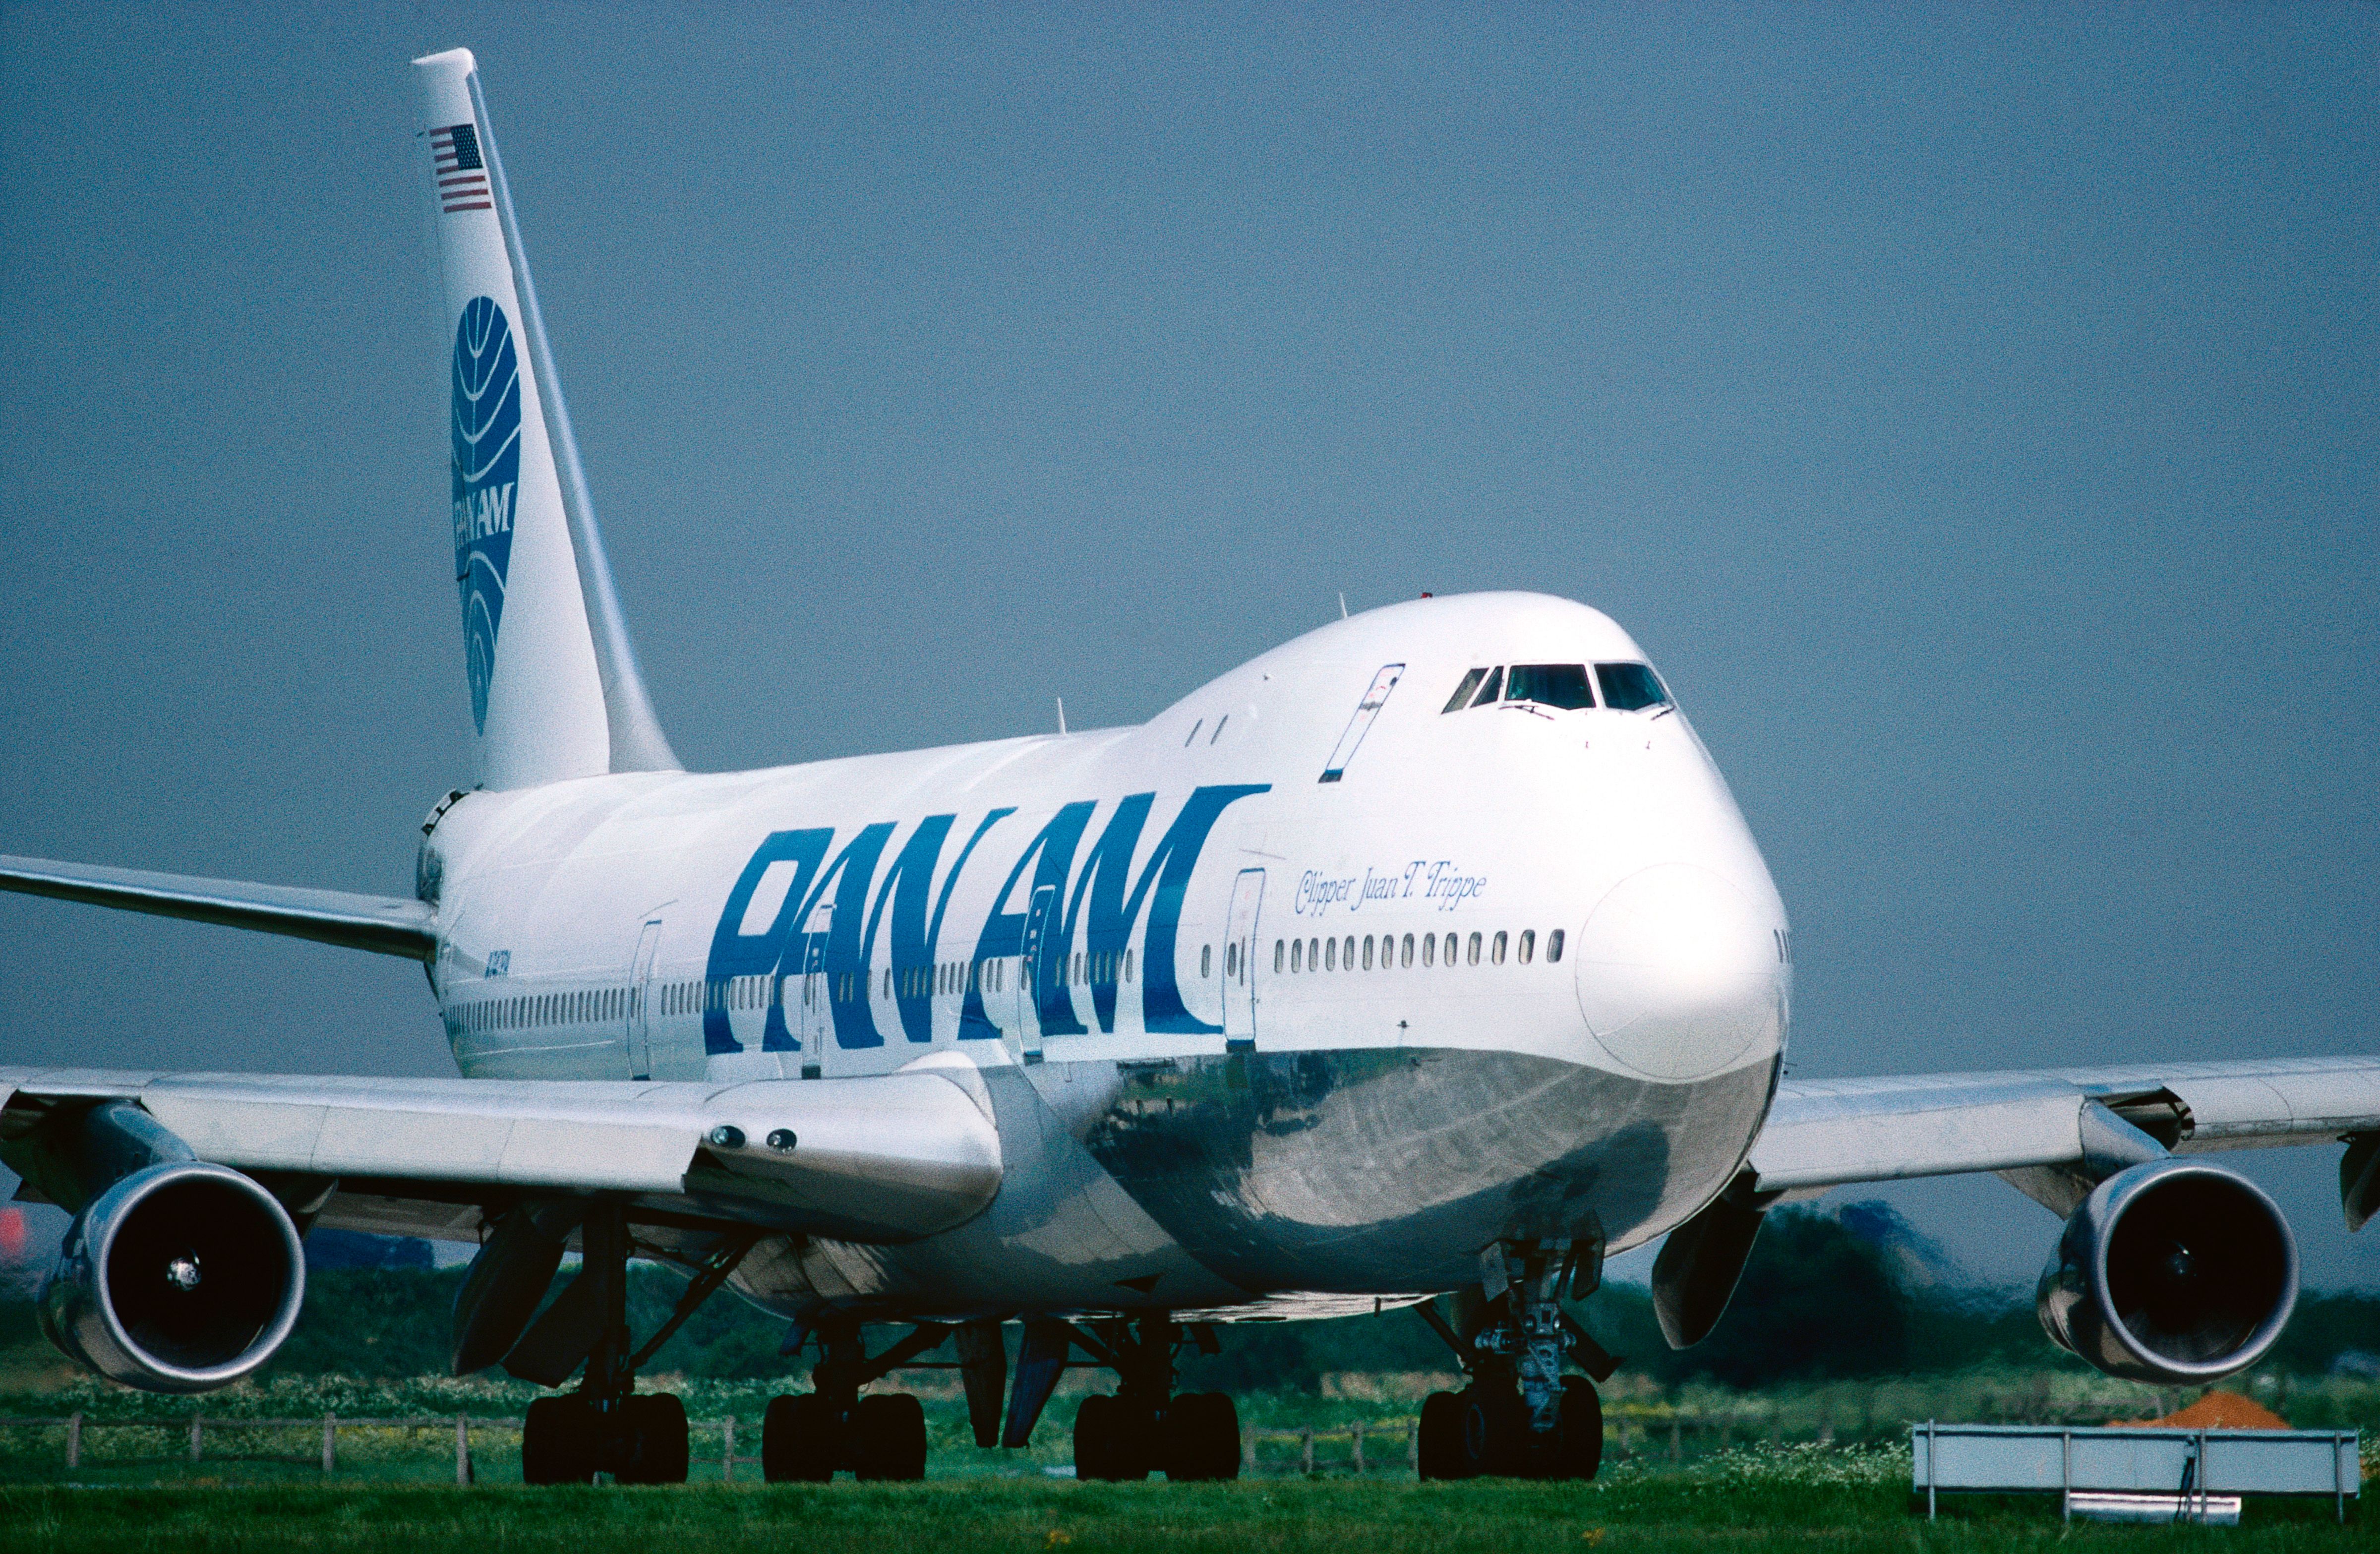 An Pan Am Boeing 747